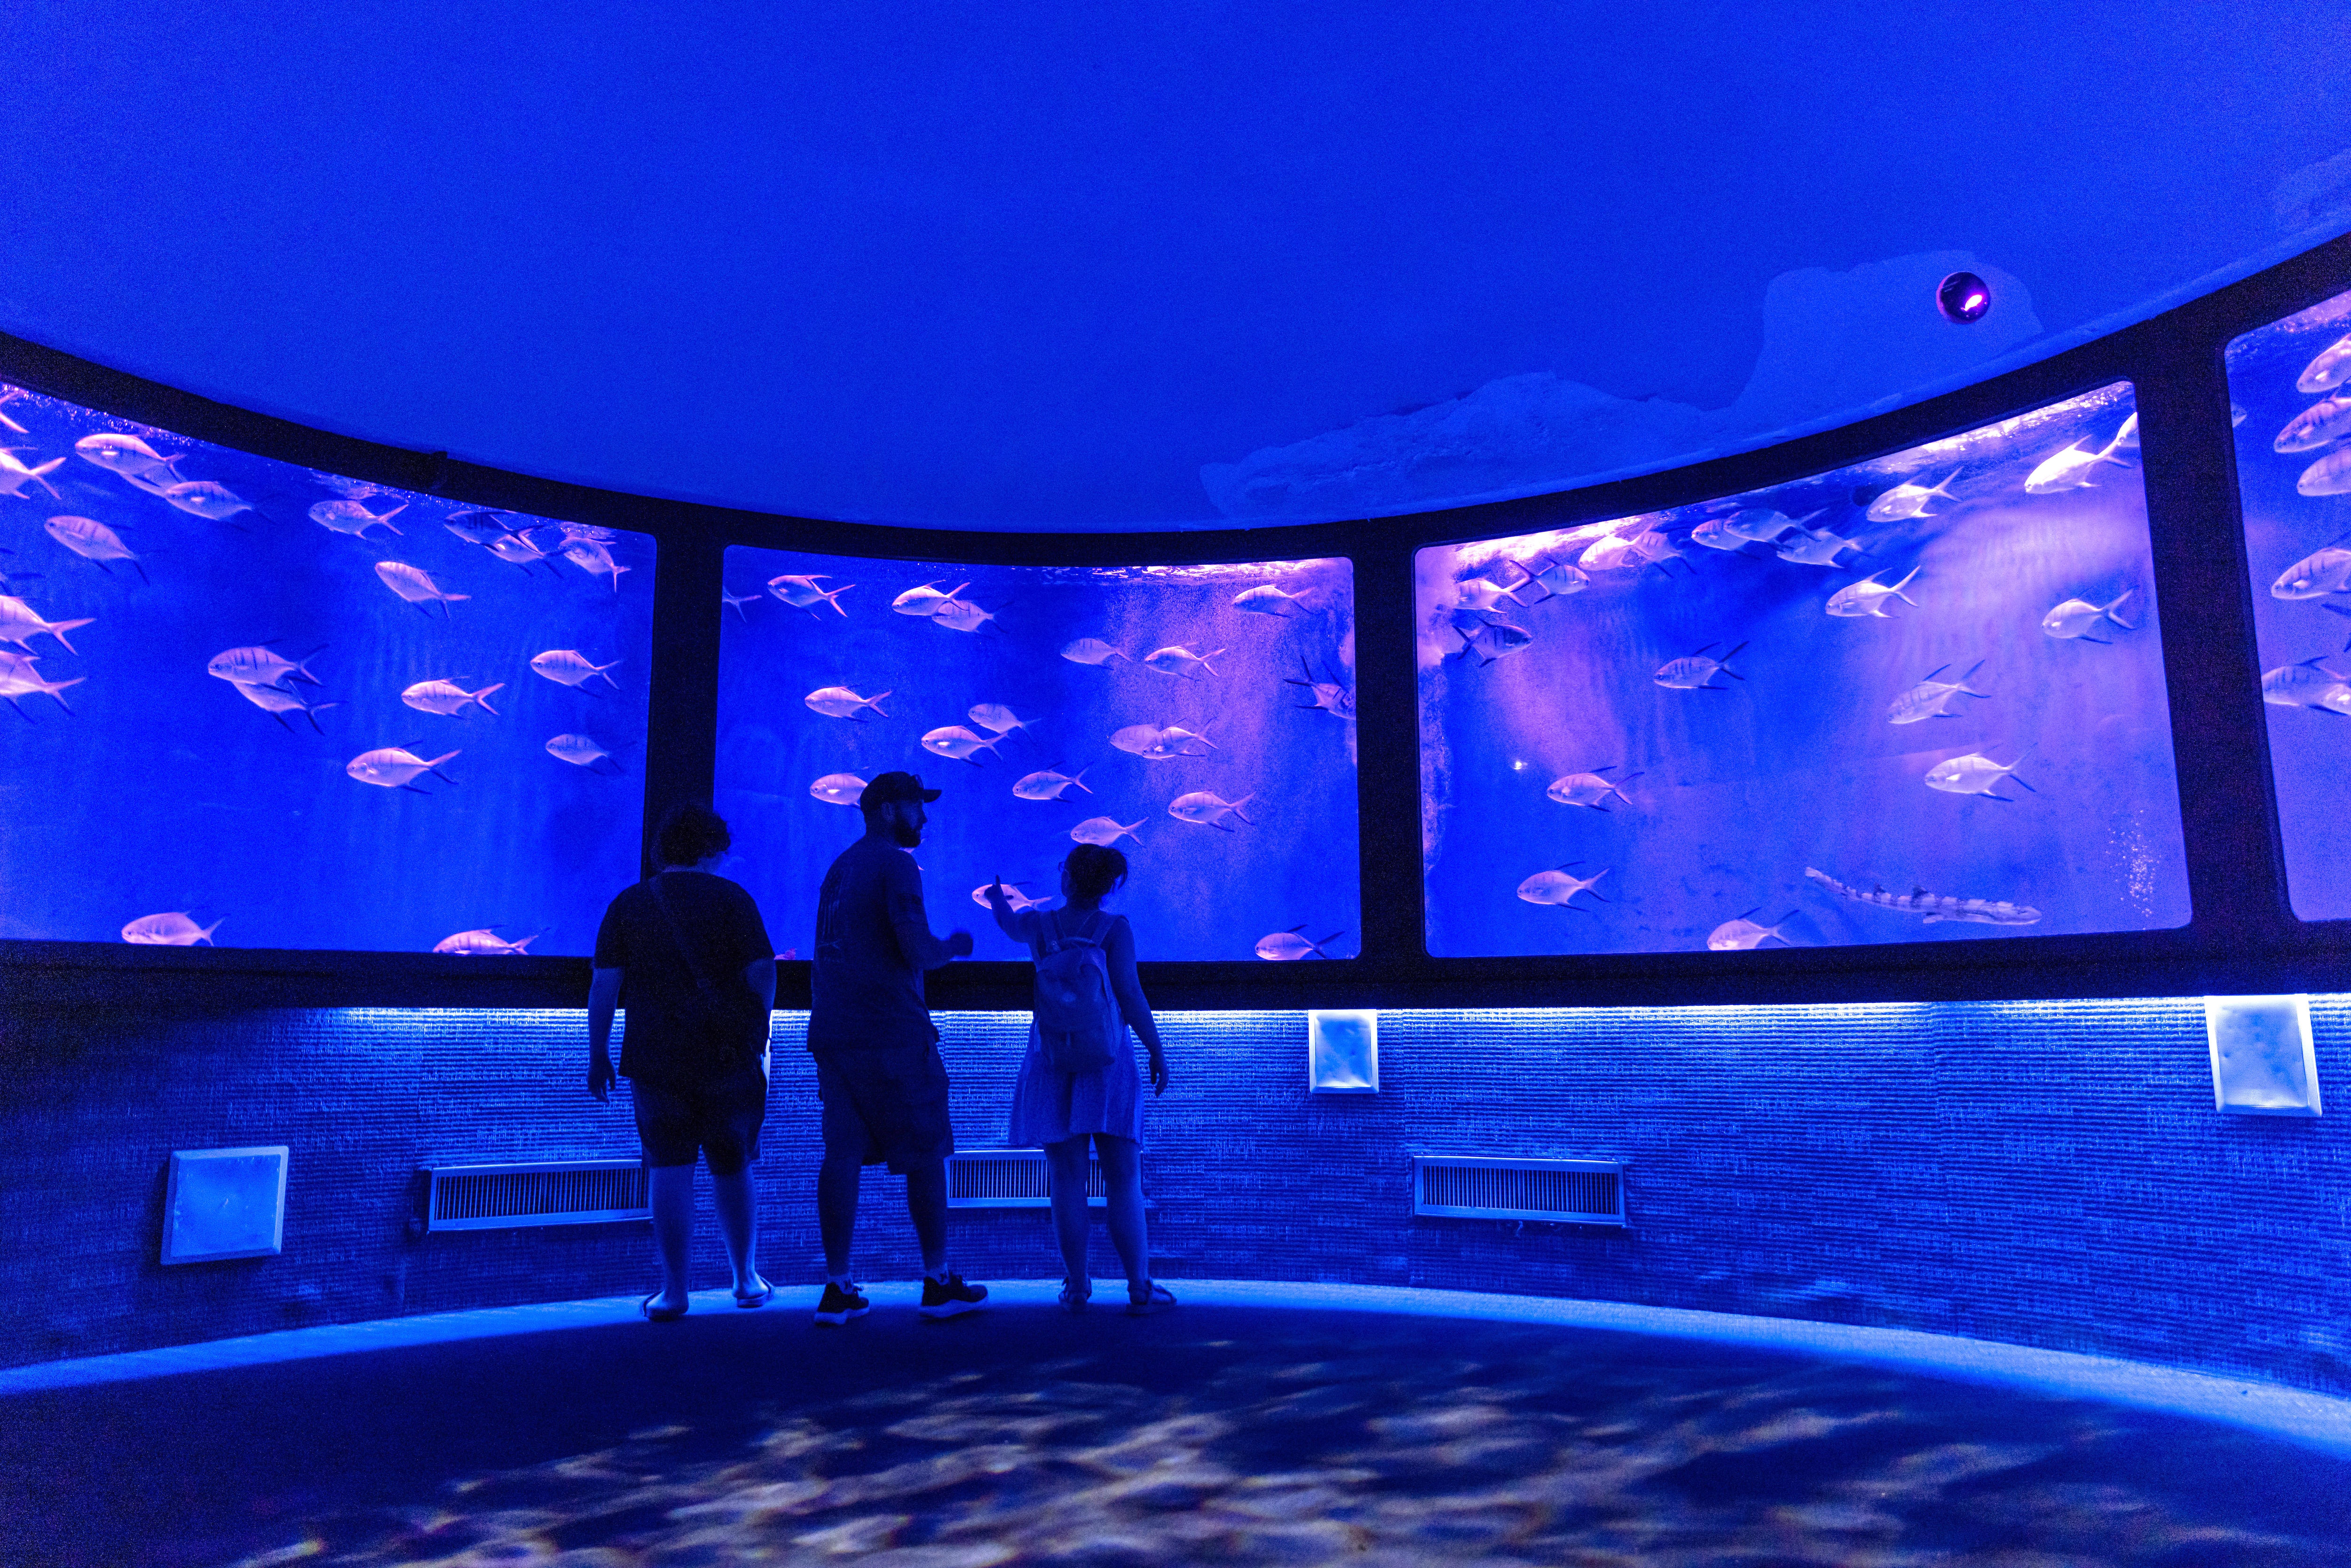 2. SEA LIFE Orlando Aquarium